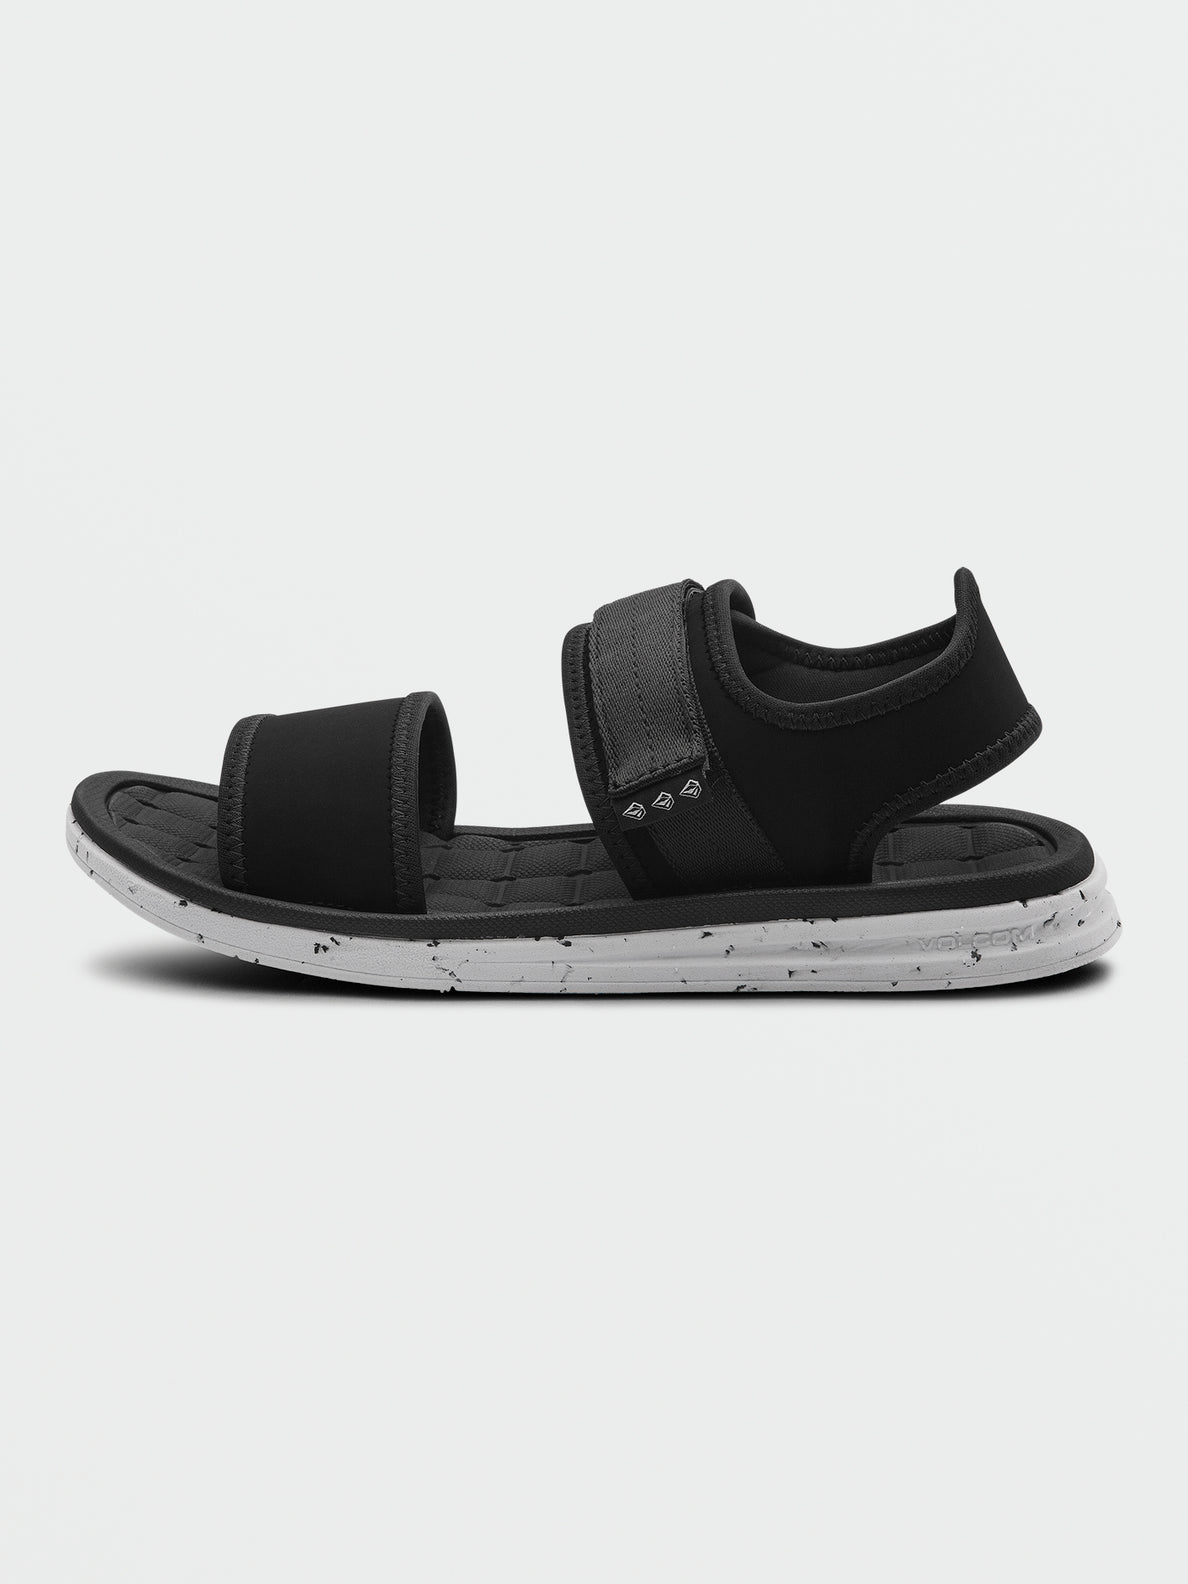 V.Co Draft Sport Sandals - Black White